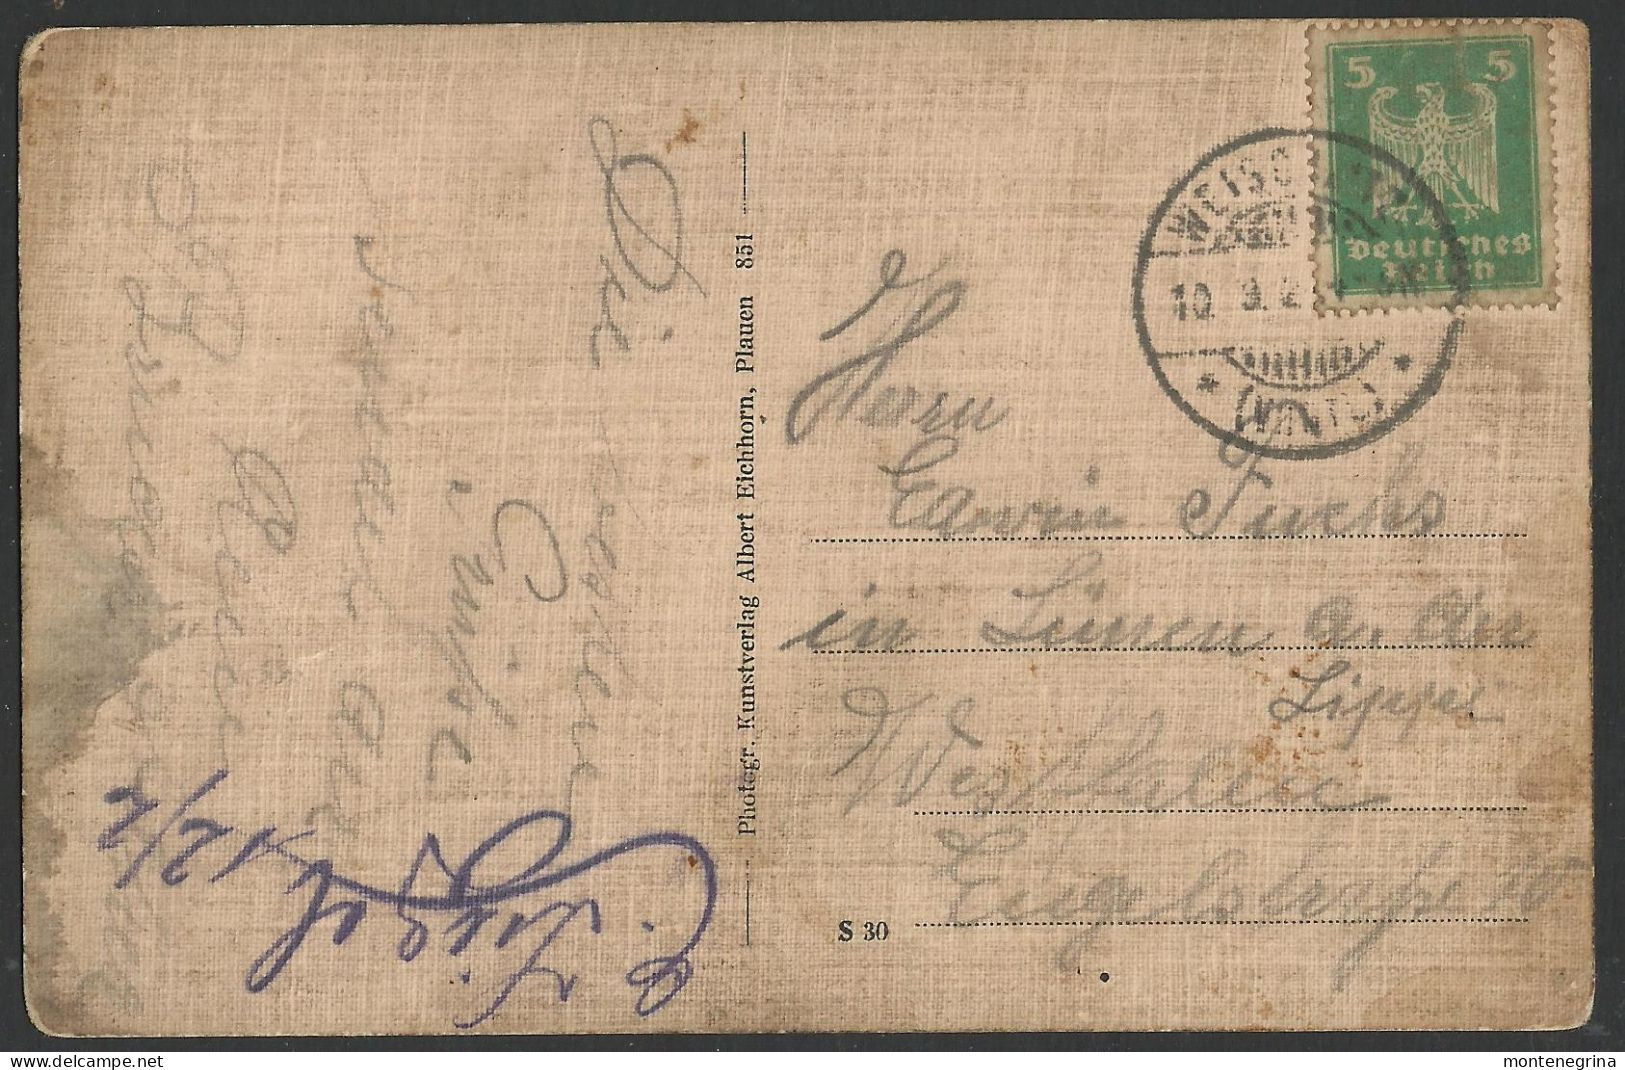 GEILSDORF - Gesamtansicht, Ortsanicht - 1923 Old Postcard (see Sales Conditions) 08463 - Gersdorf